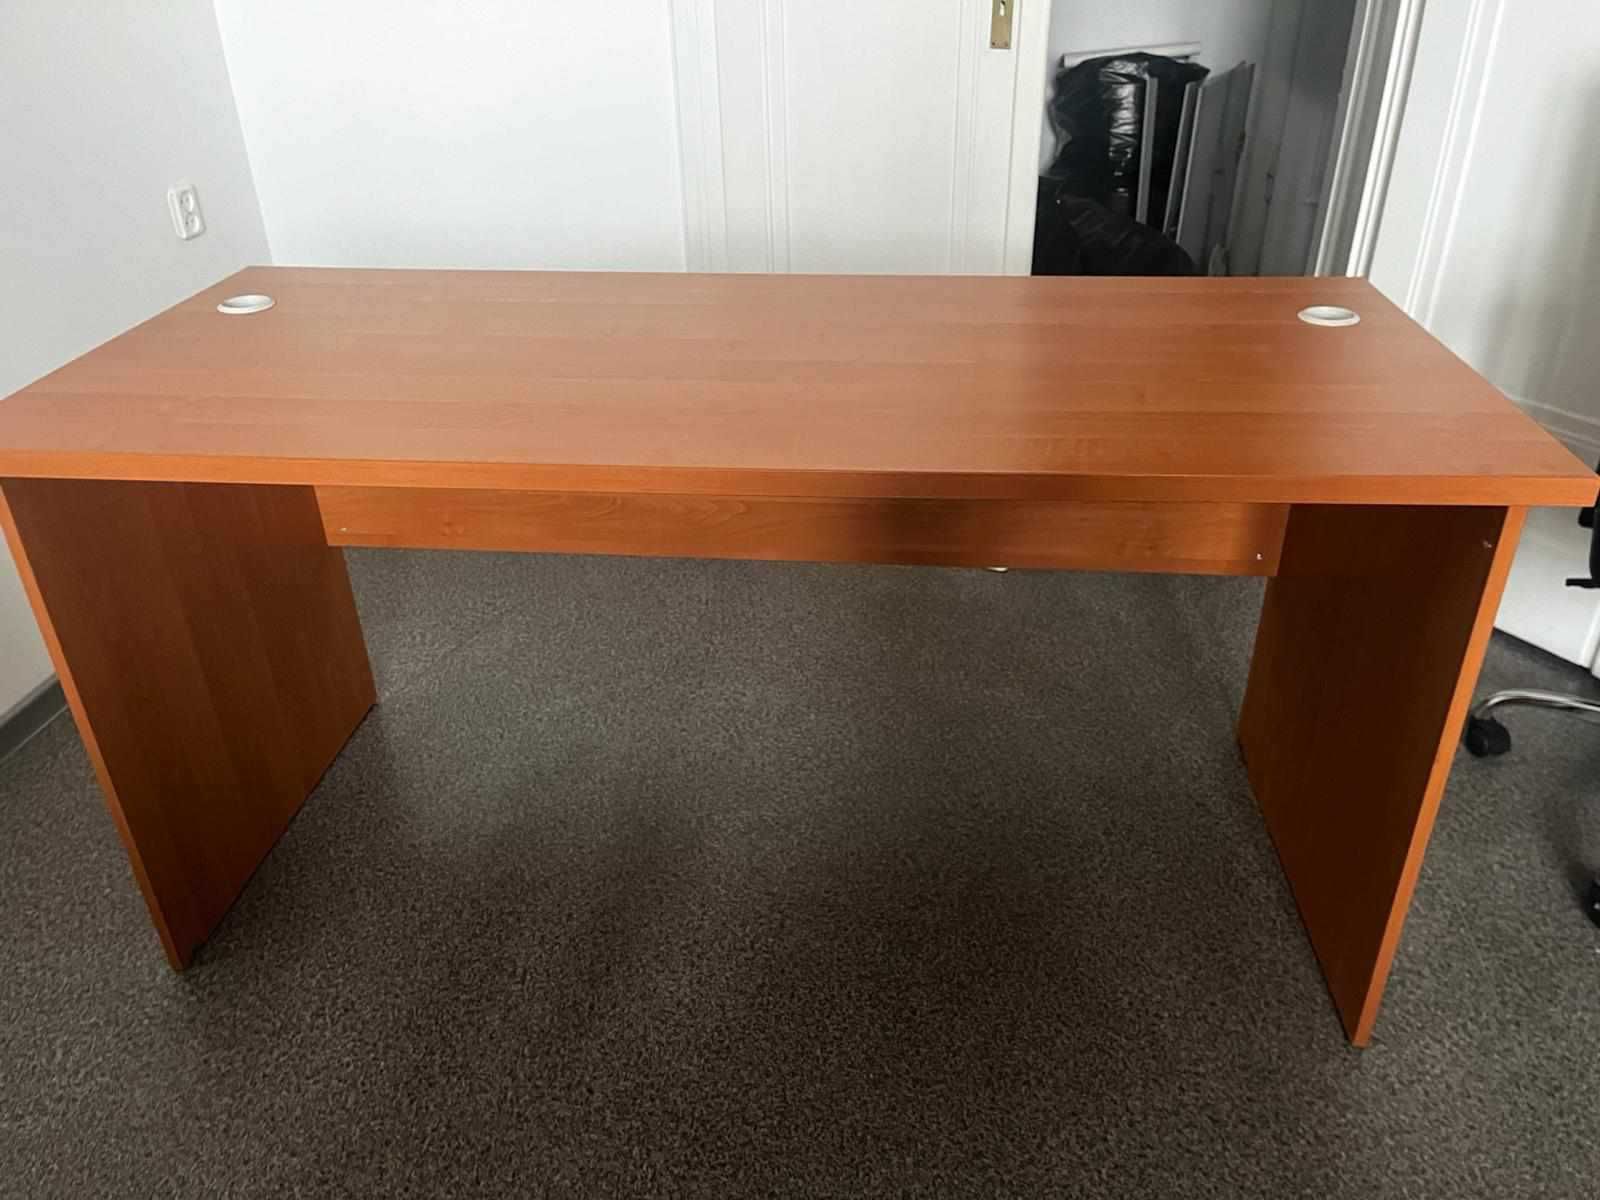 Solidne biurka z przegródkami